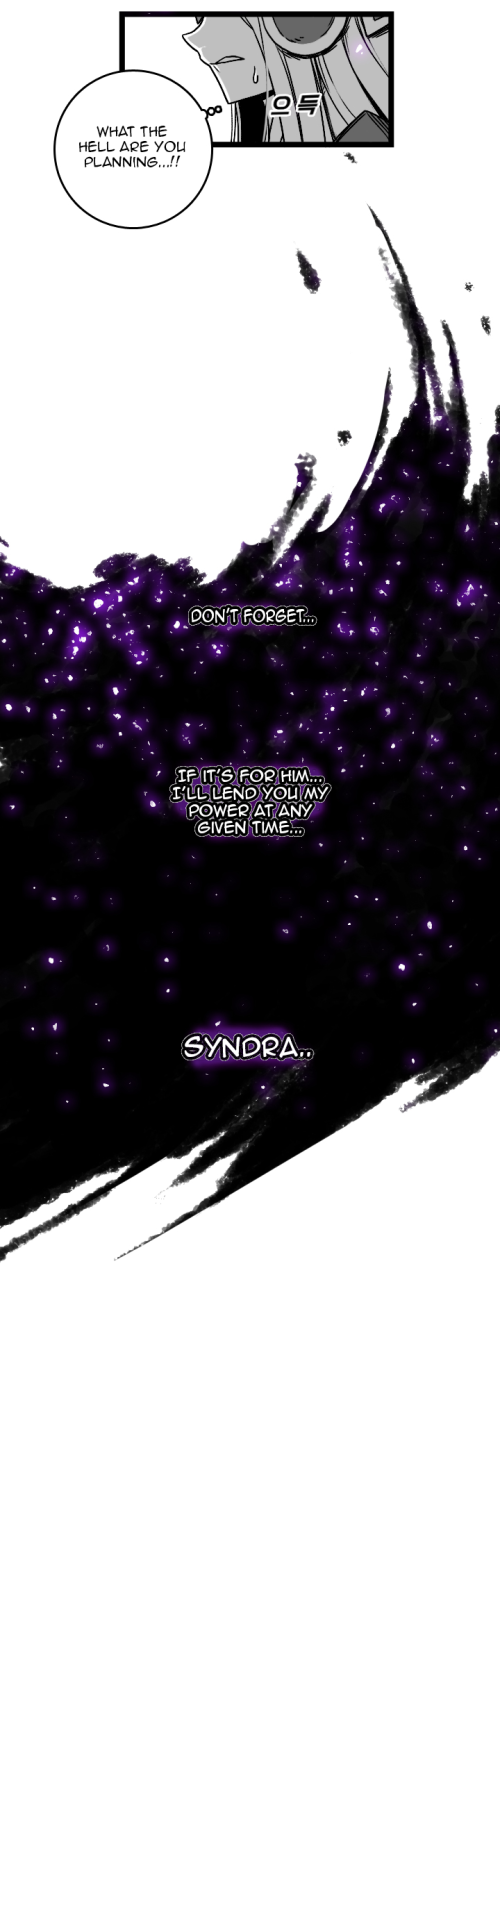 Syndra แล้ว zeds ธรรมดา ชีวิต ฤดูกาล 3 ส่วนหนึ่ง 17